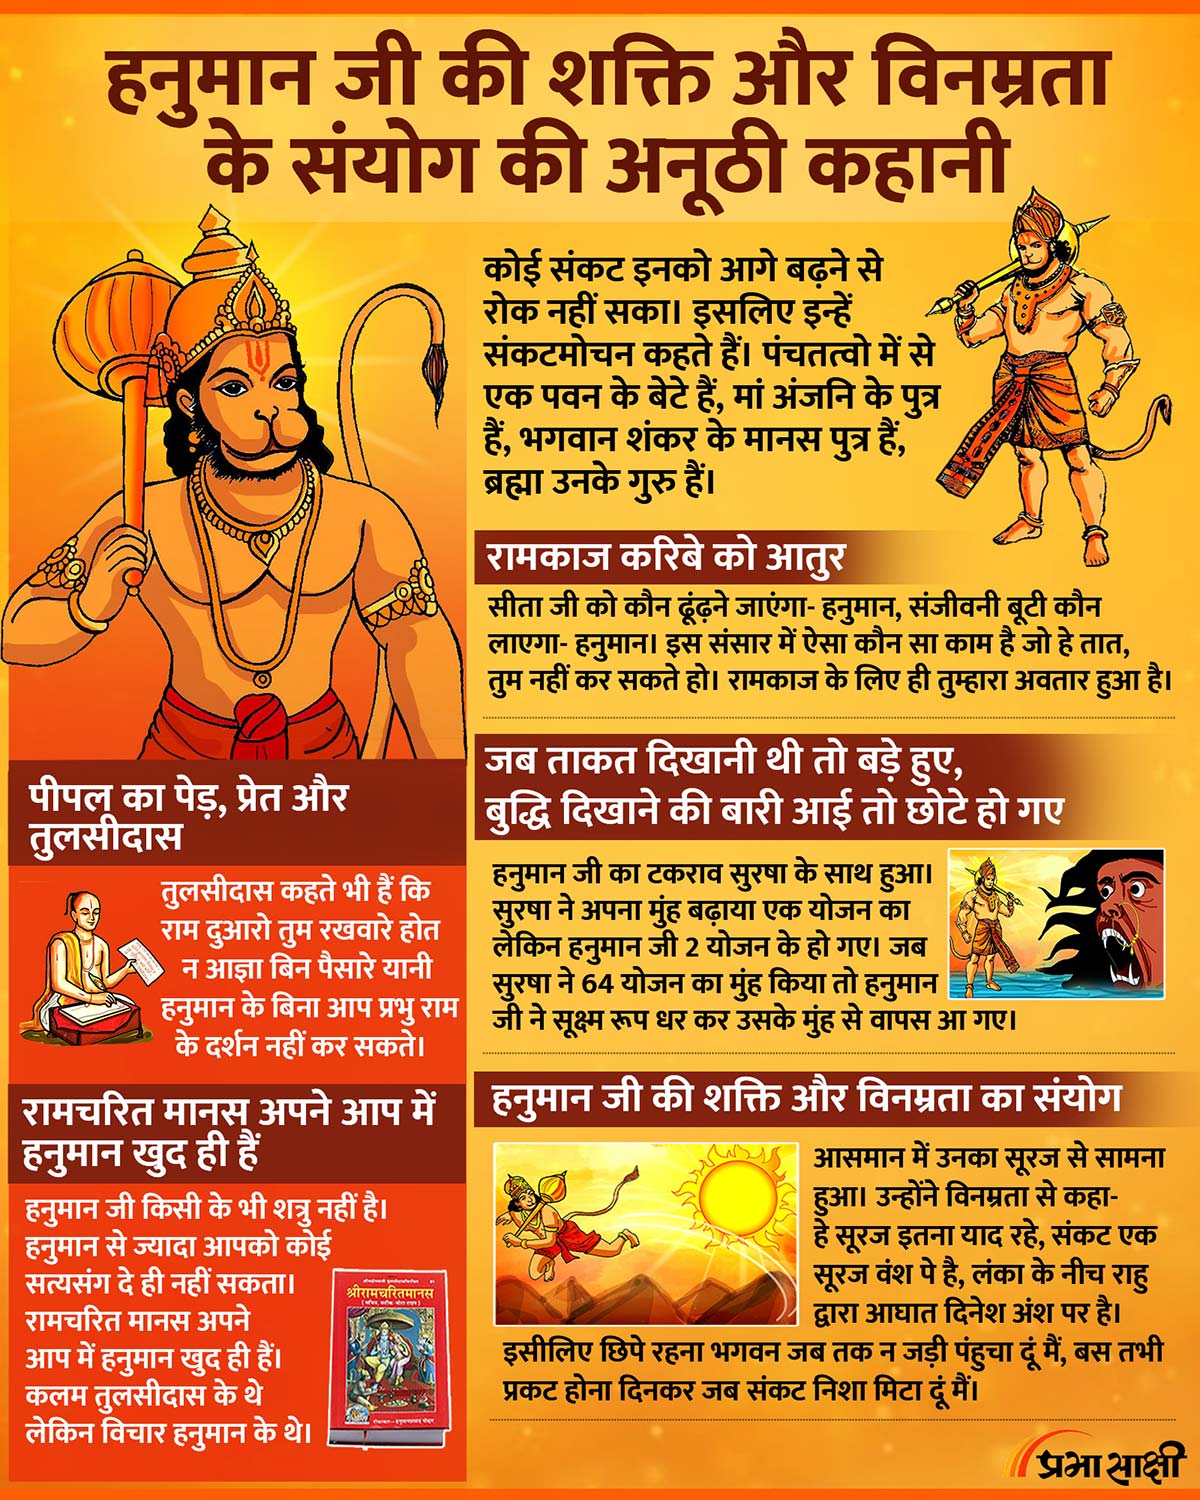 Story of Hanuman Ji